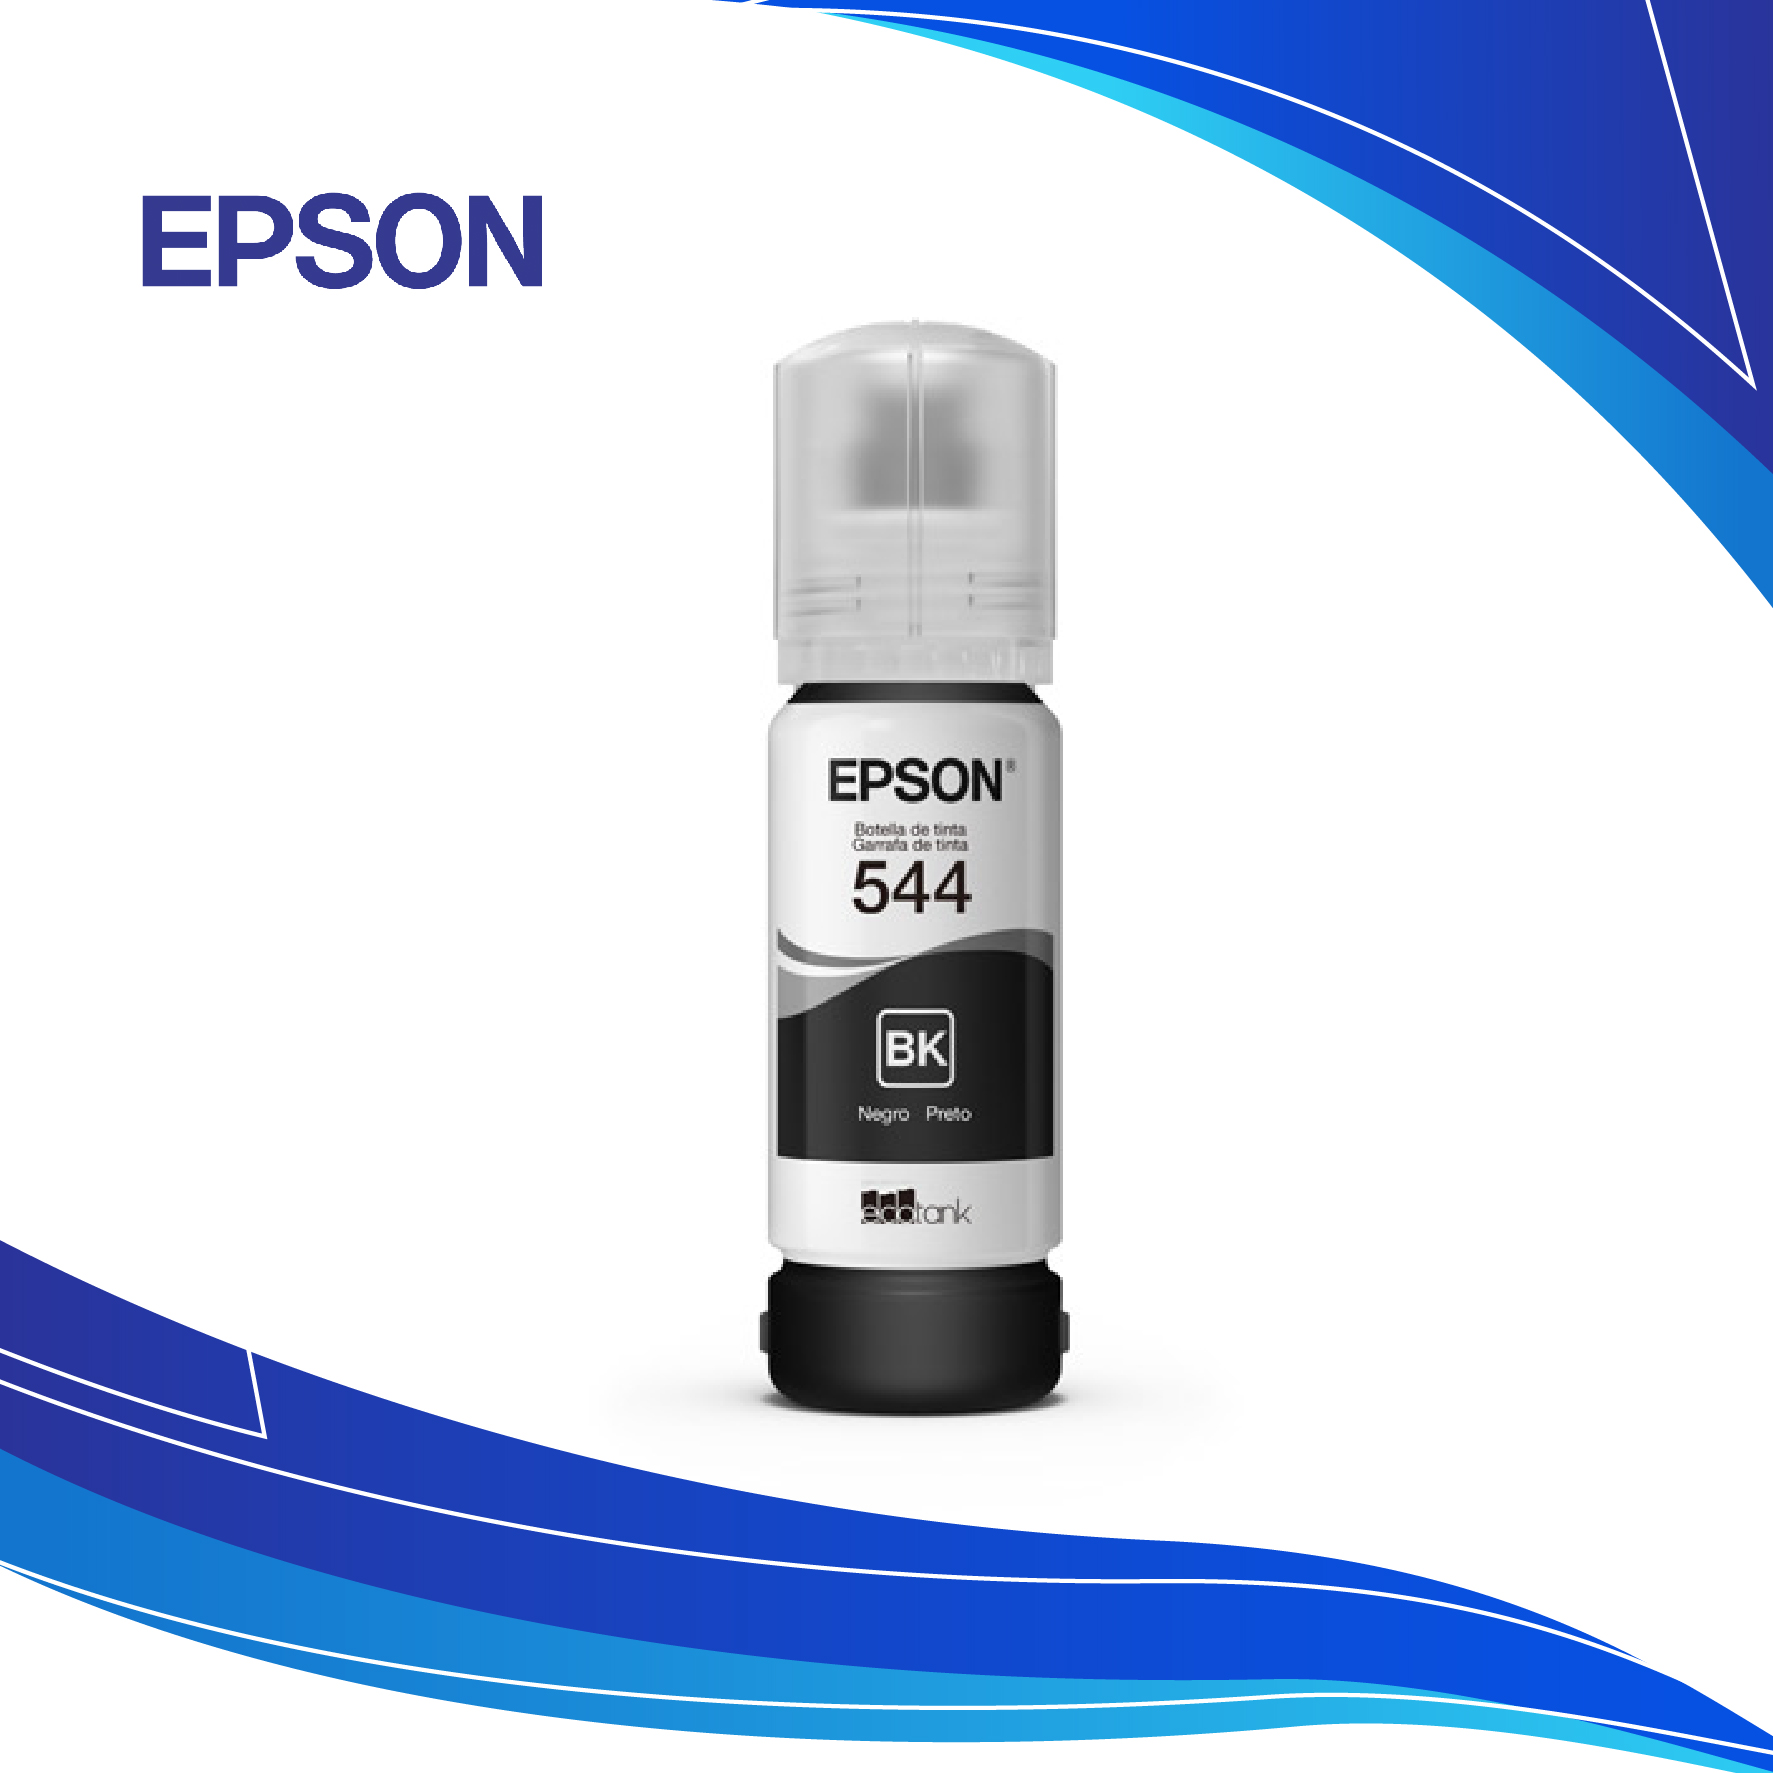 Tinta Epson 544 Negra | Tinta Para Impresora Epson al costo | tinta de impresora EPSON